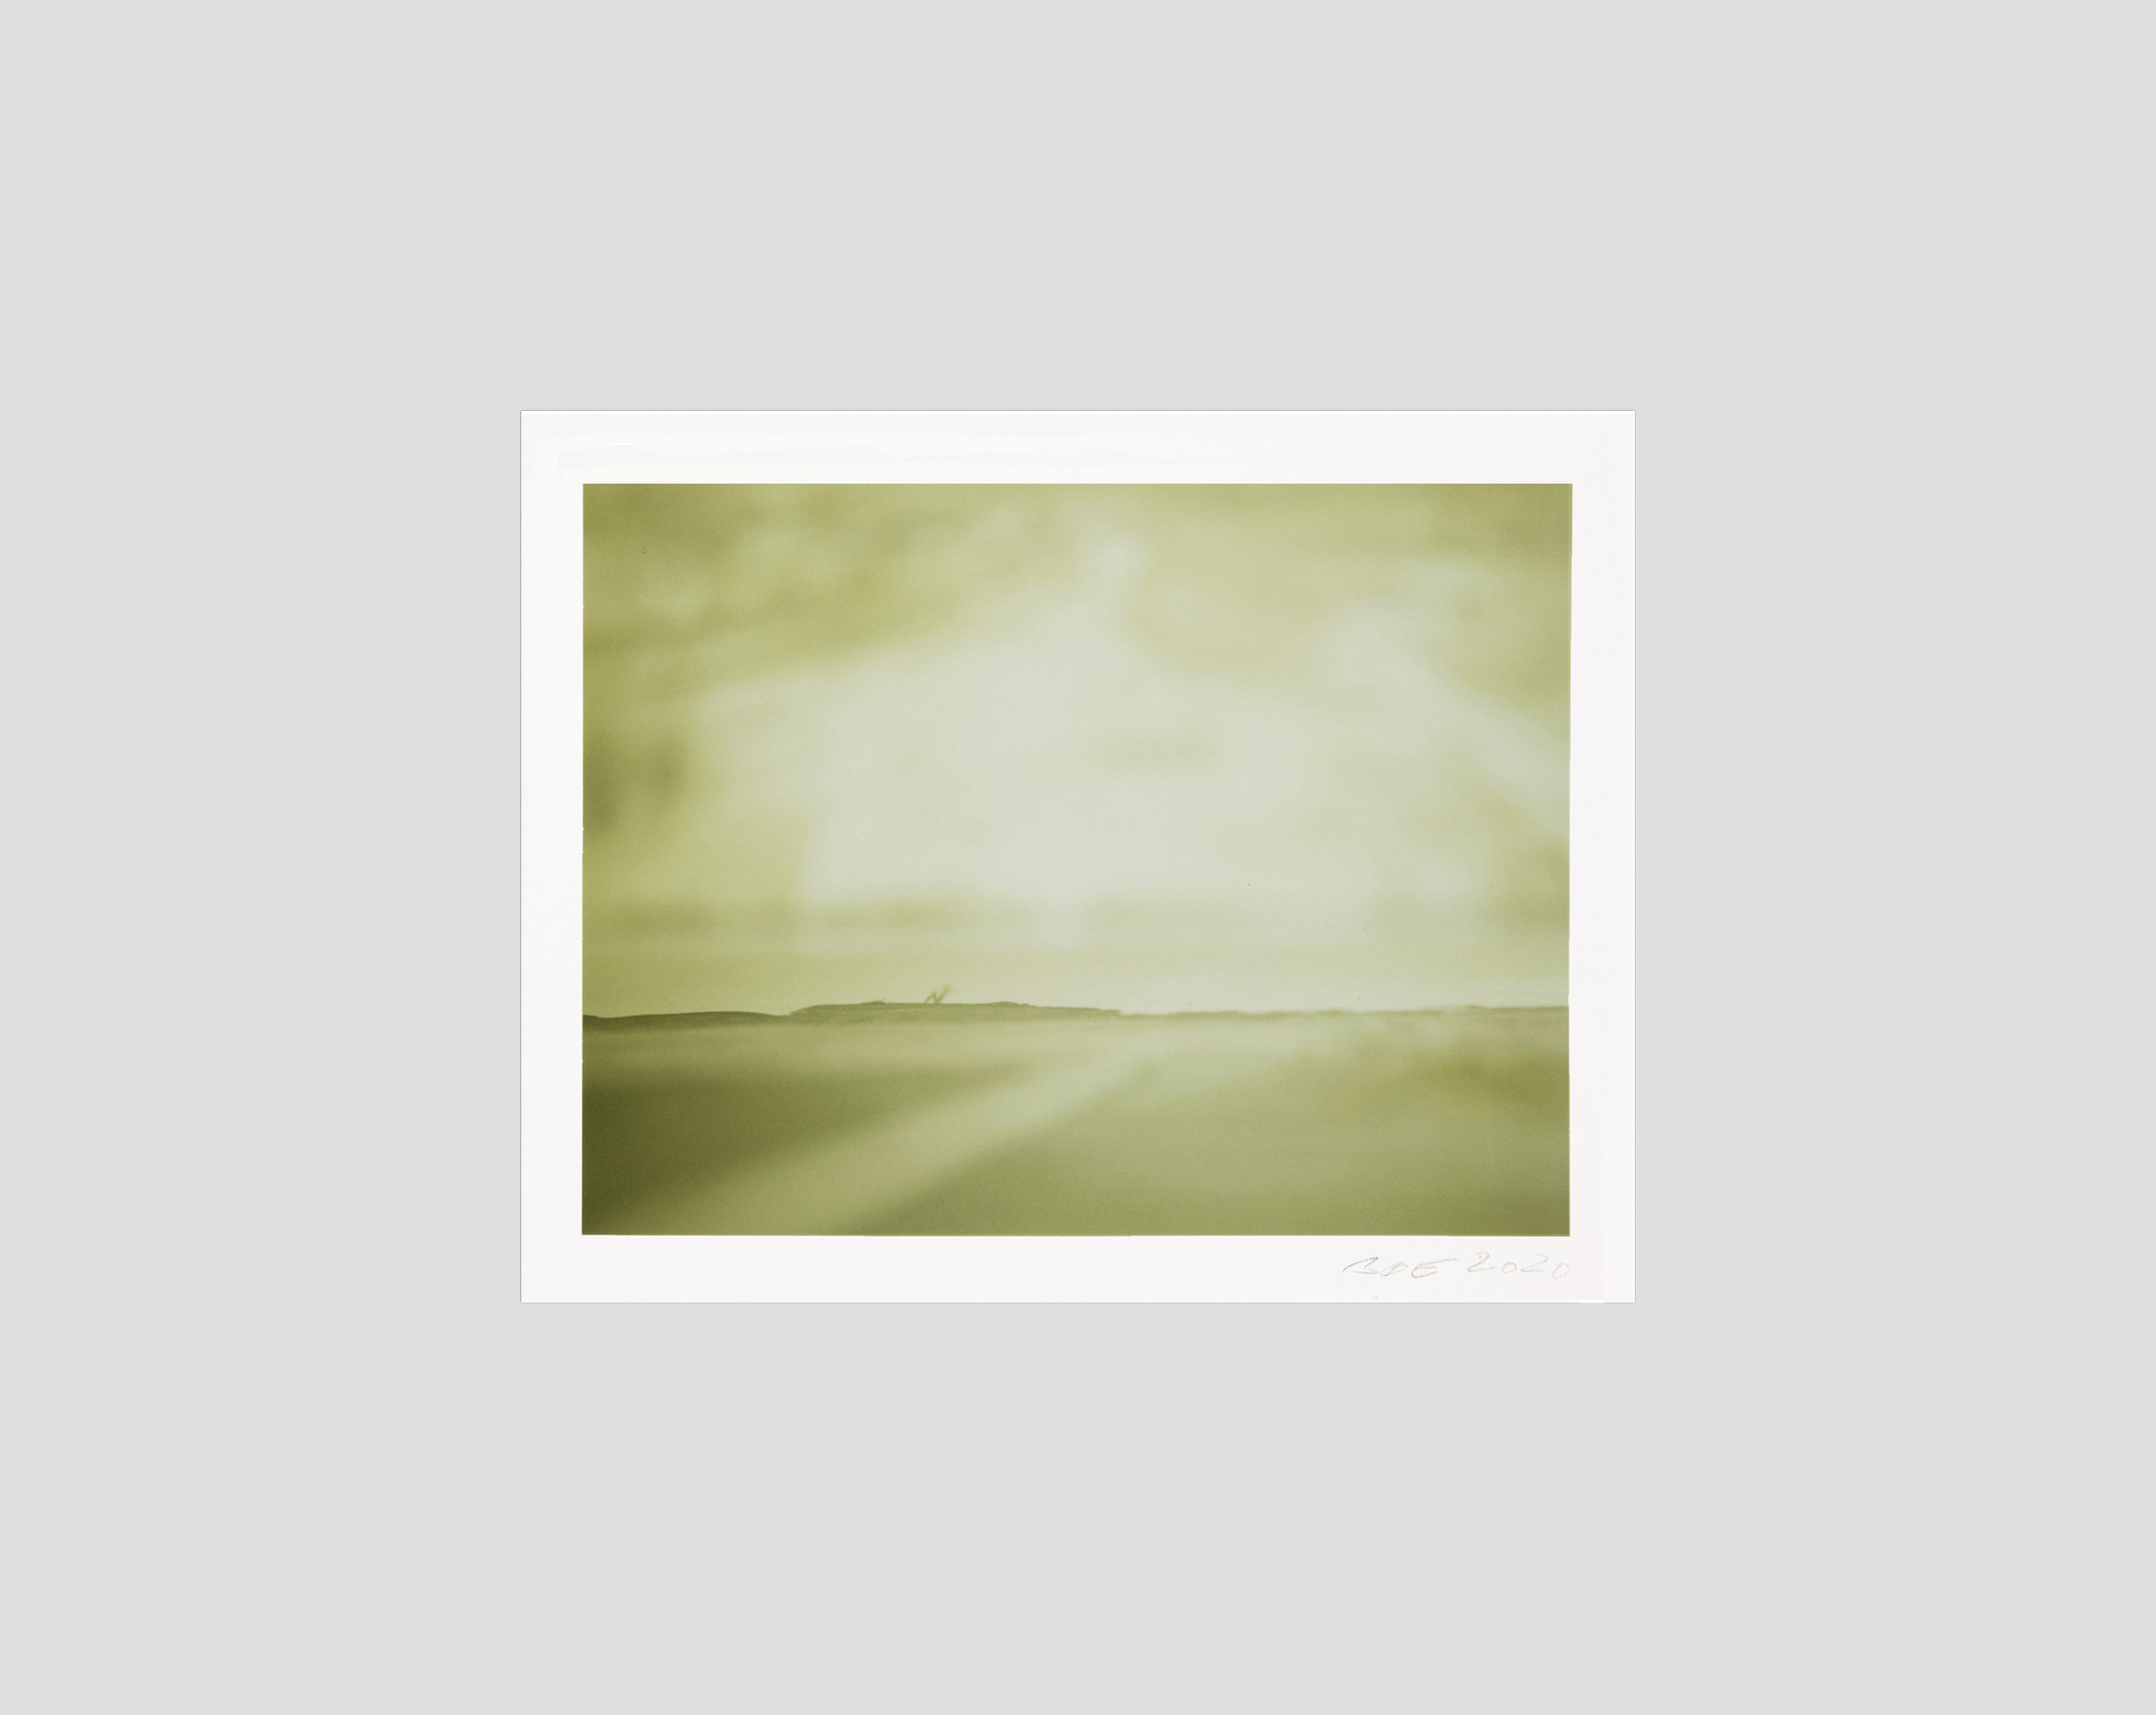  U.T.  2019  7,3x9,5 cm  polaroid original 